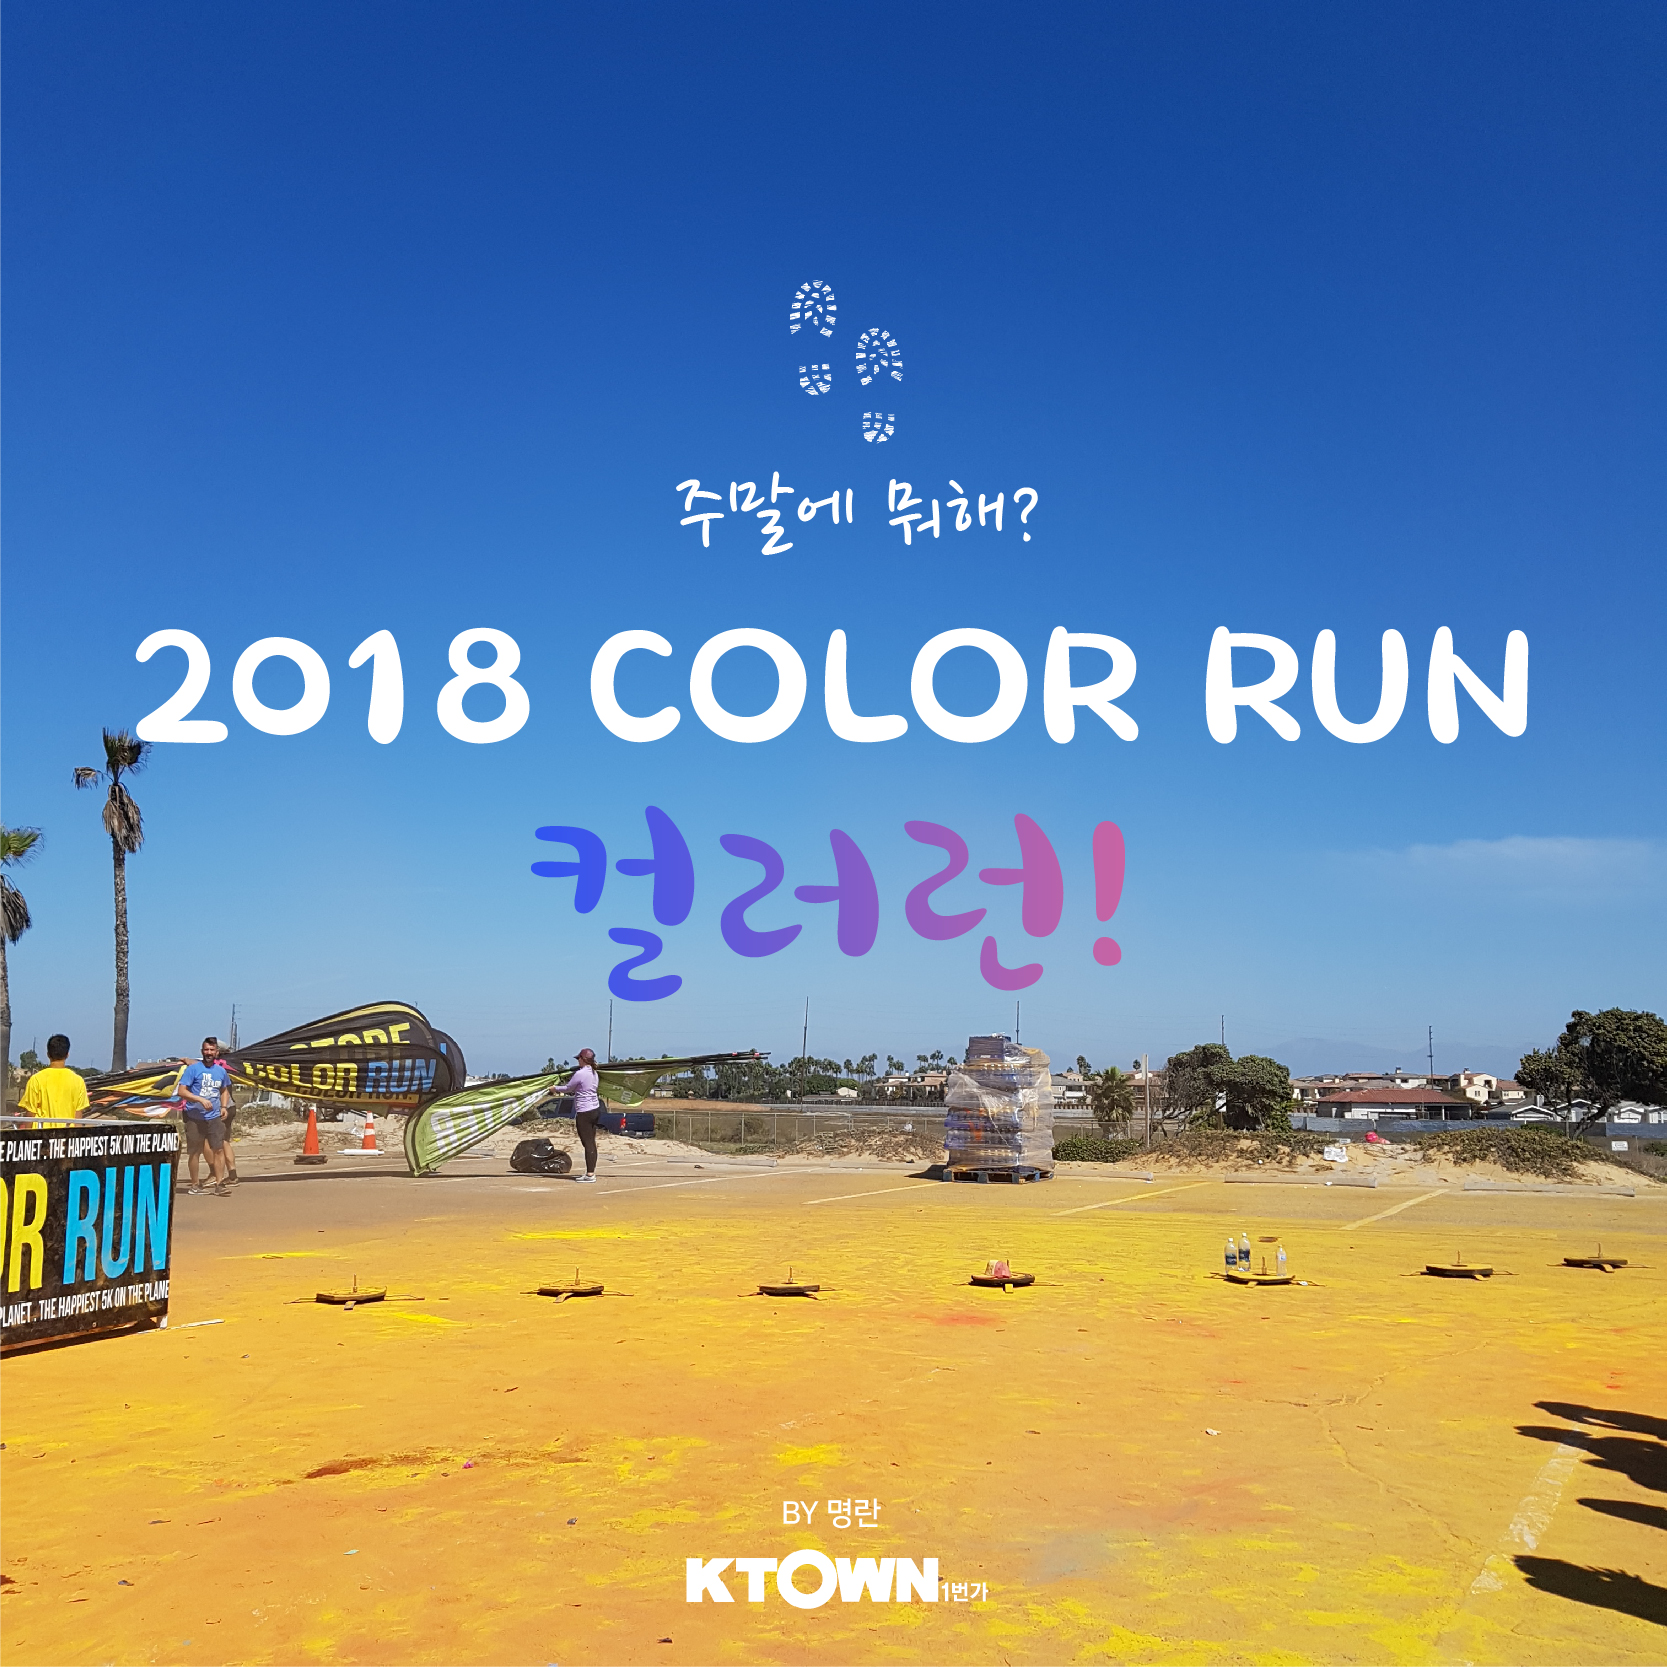 2018 Color Run!